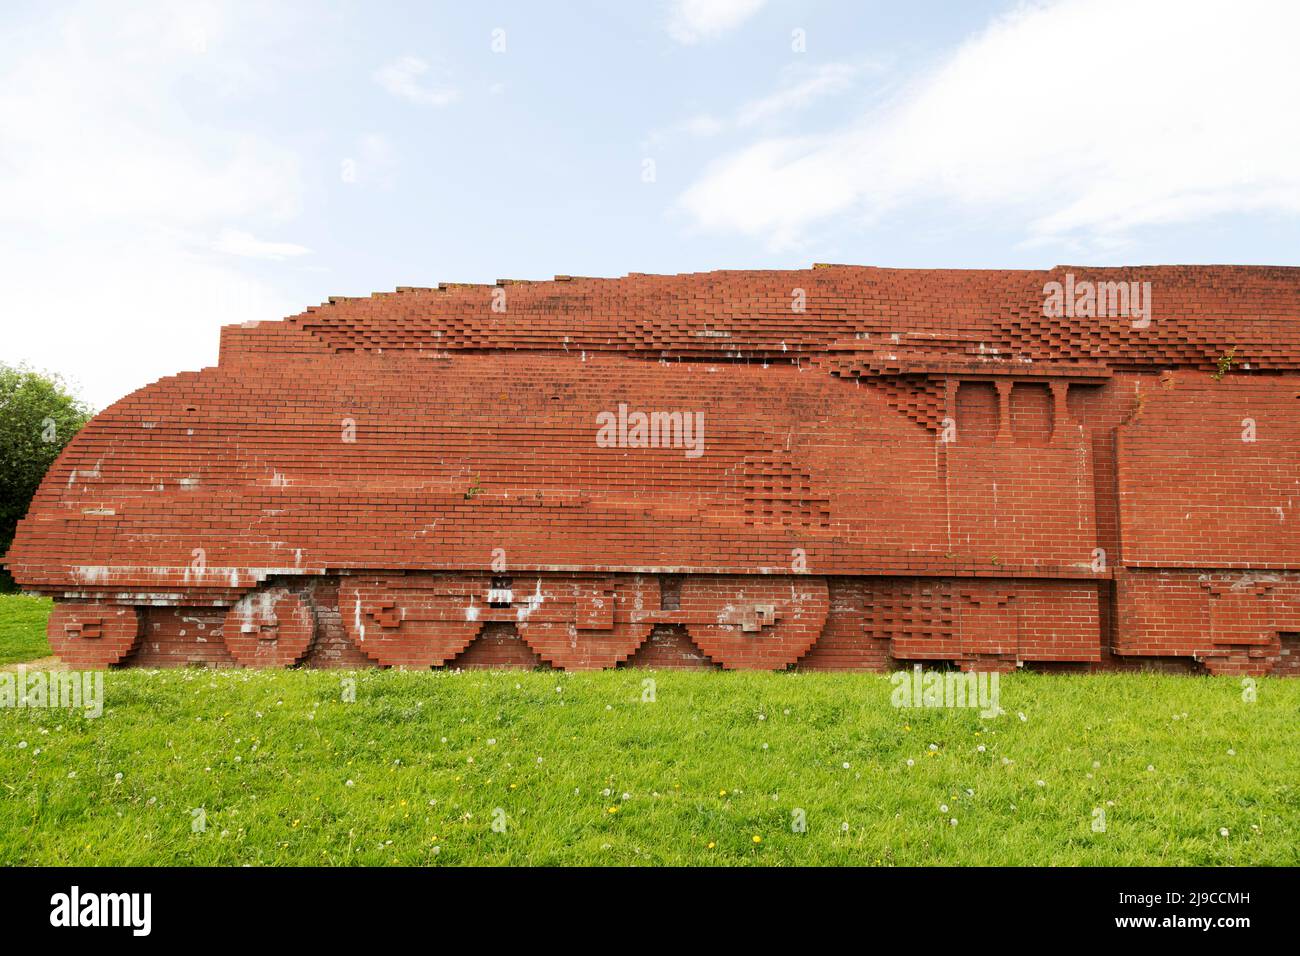 Darlington Brick Train en Darlington, Condado de Durham, Inglaterra. La escultura de ladrillo, que representa una locomotora de Mallard, fue creada por David M. Foto de stock